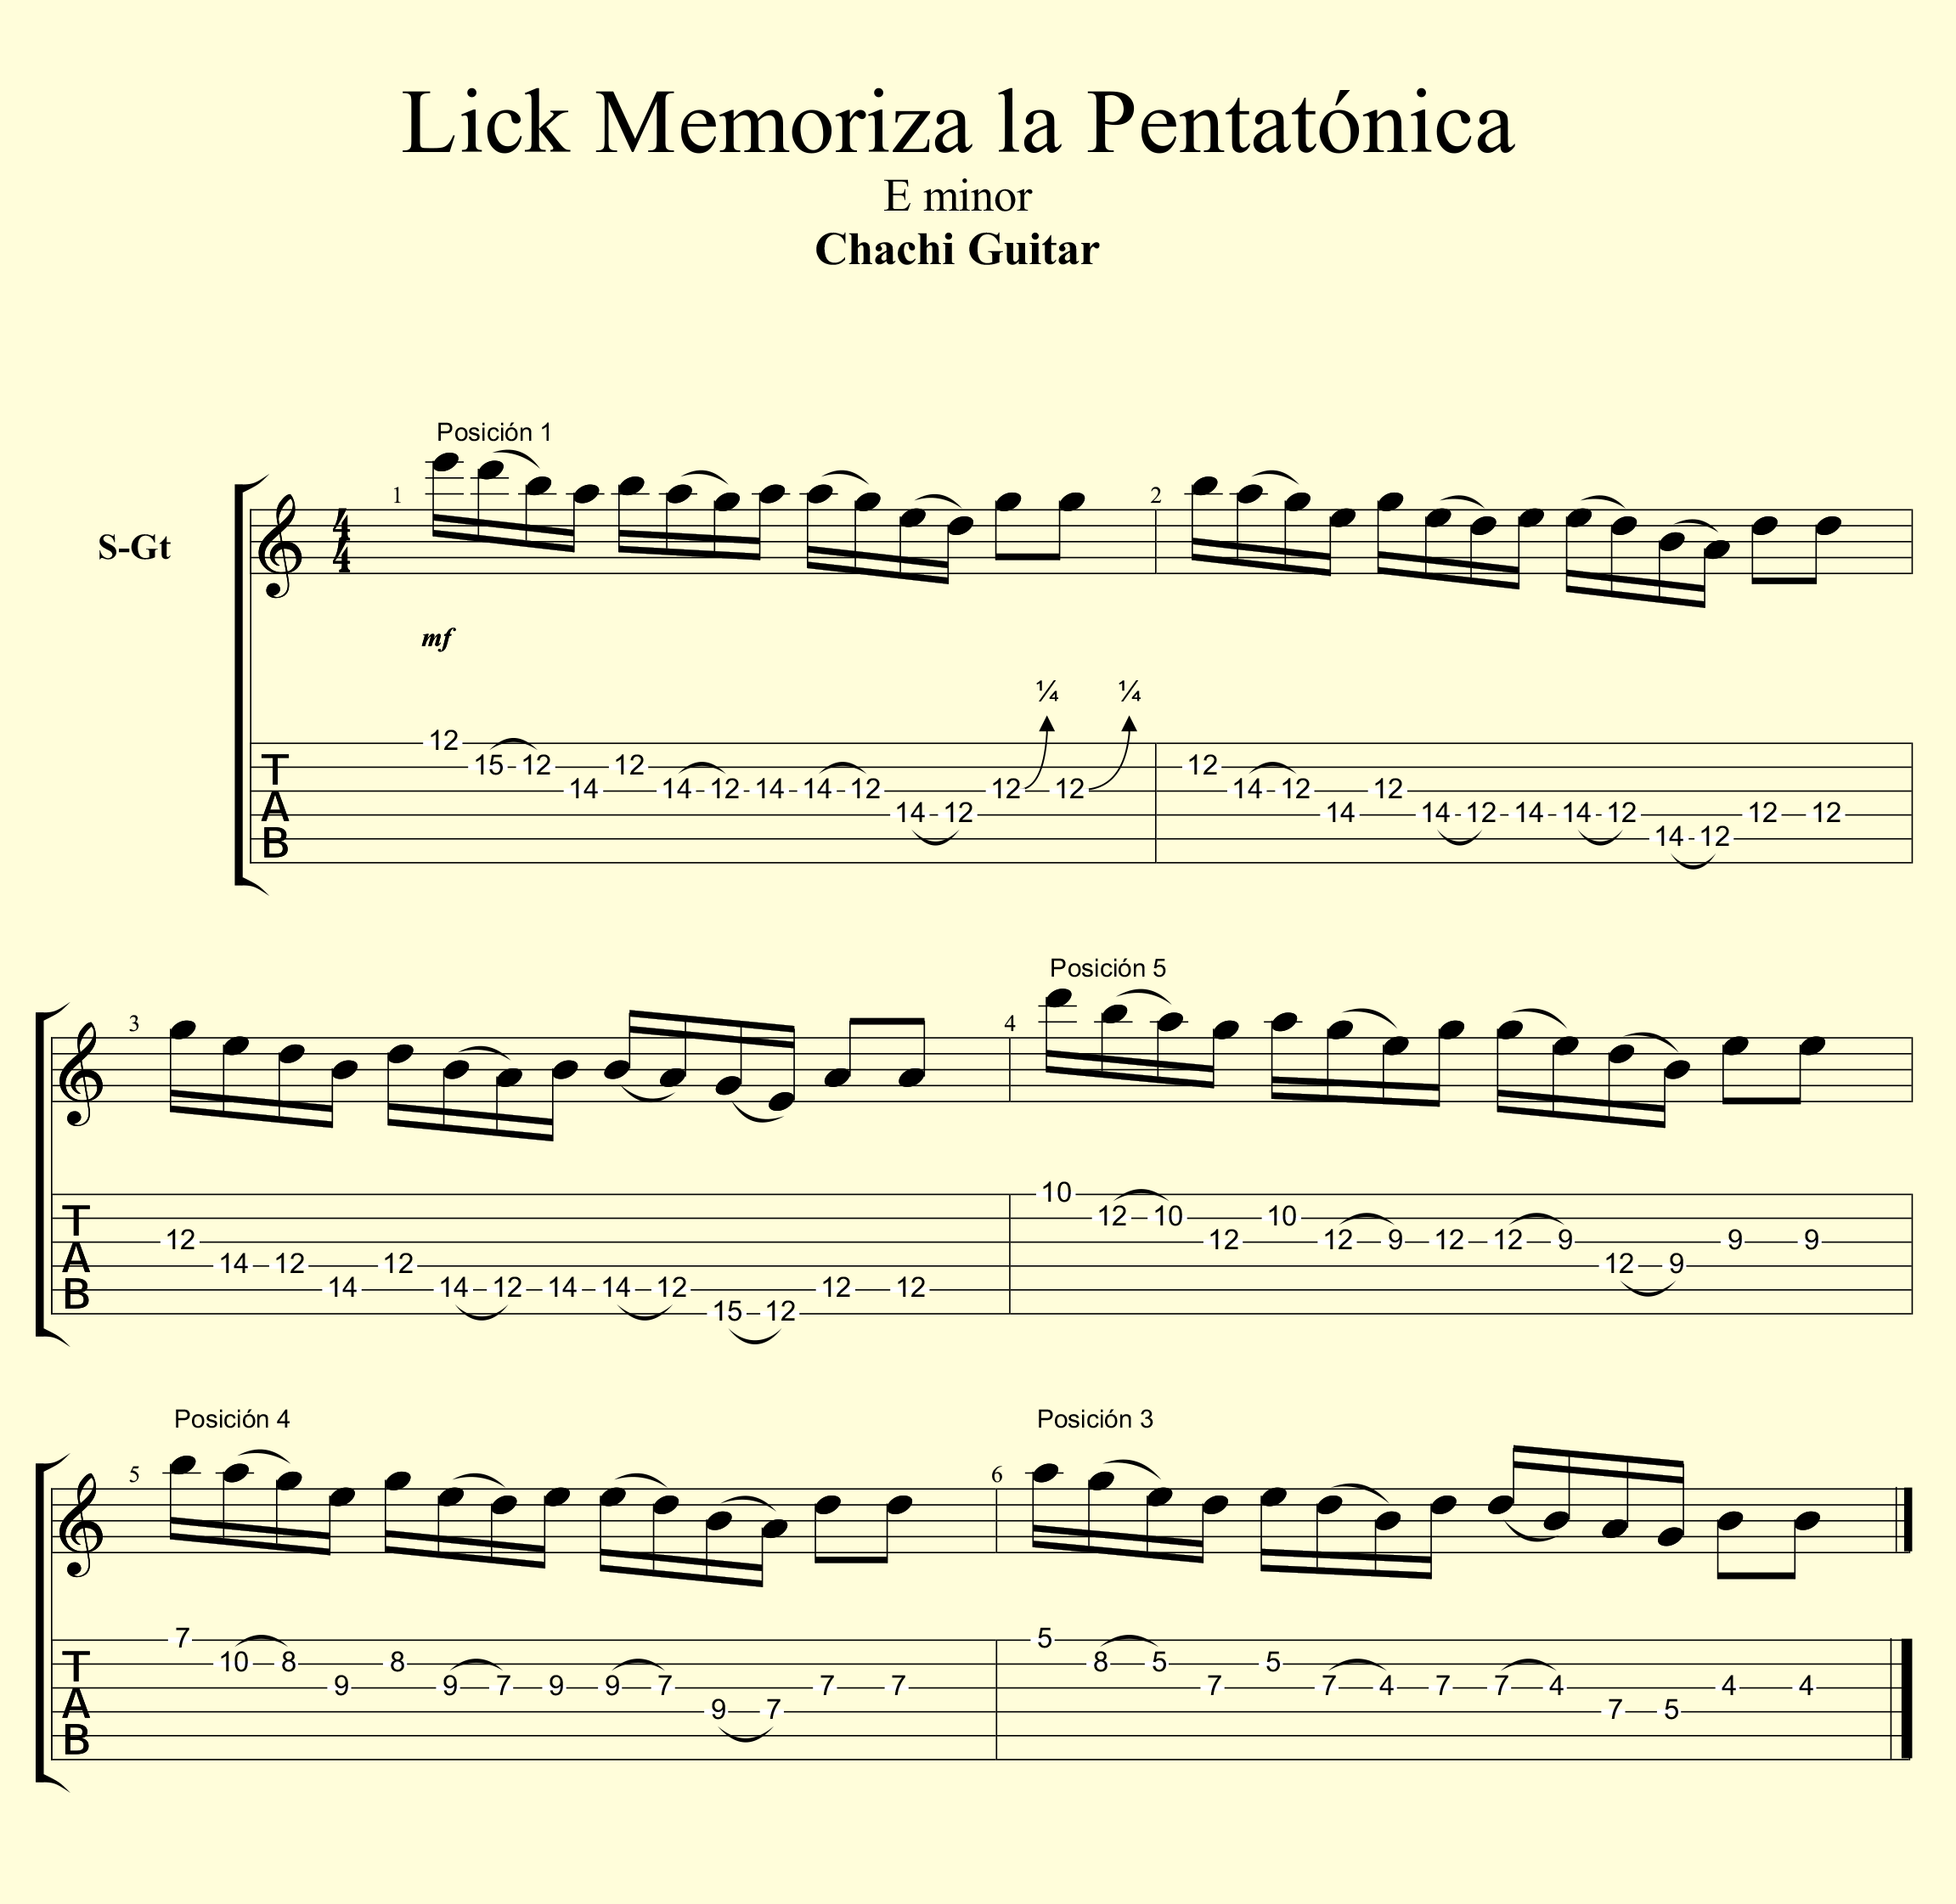 Lick Memoriza la Pentatónica